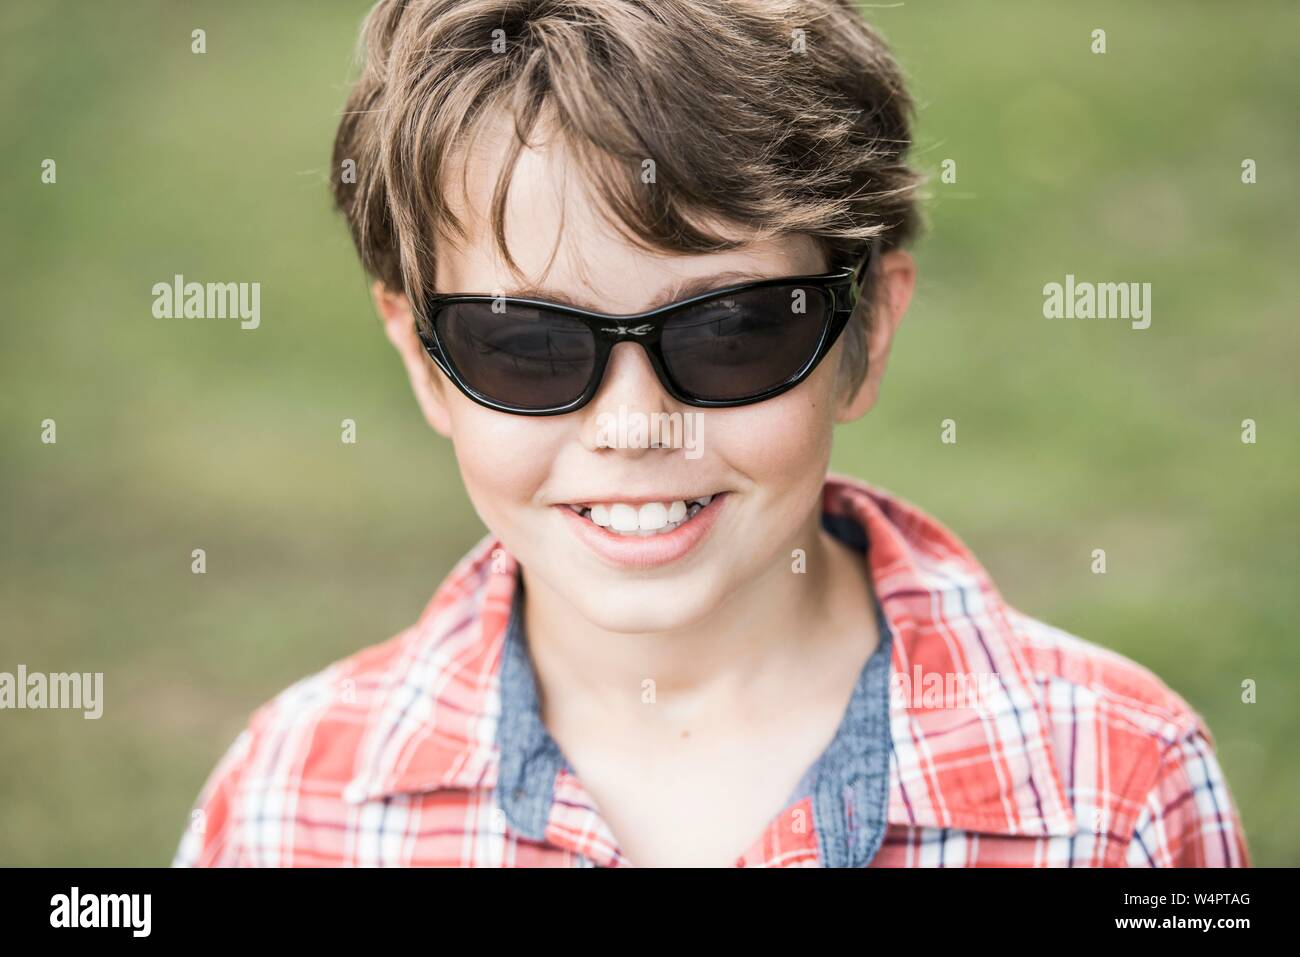 Junge, 10 Jahre alt, mit Sonnenbrille und Plaid Shirt schauen, lächeln, Porträt, Deutschland Stockfoto